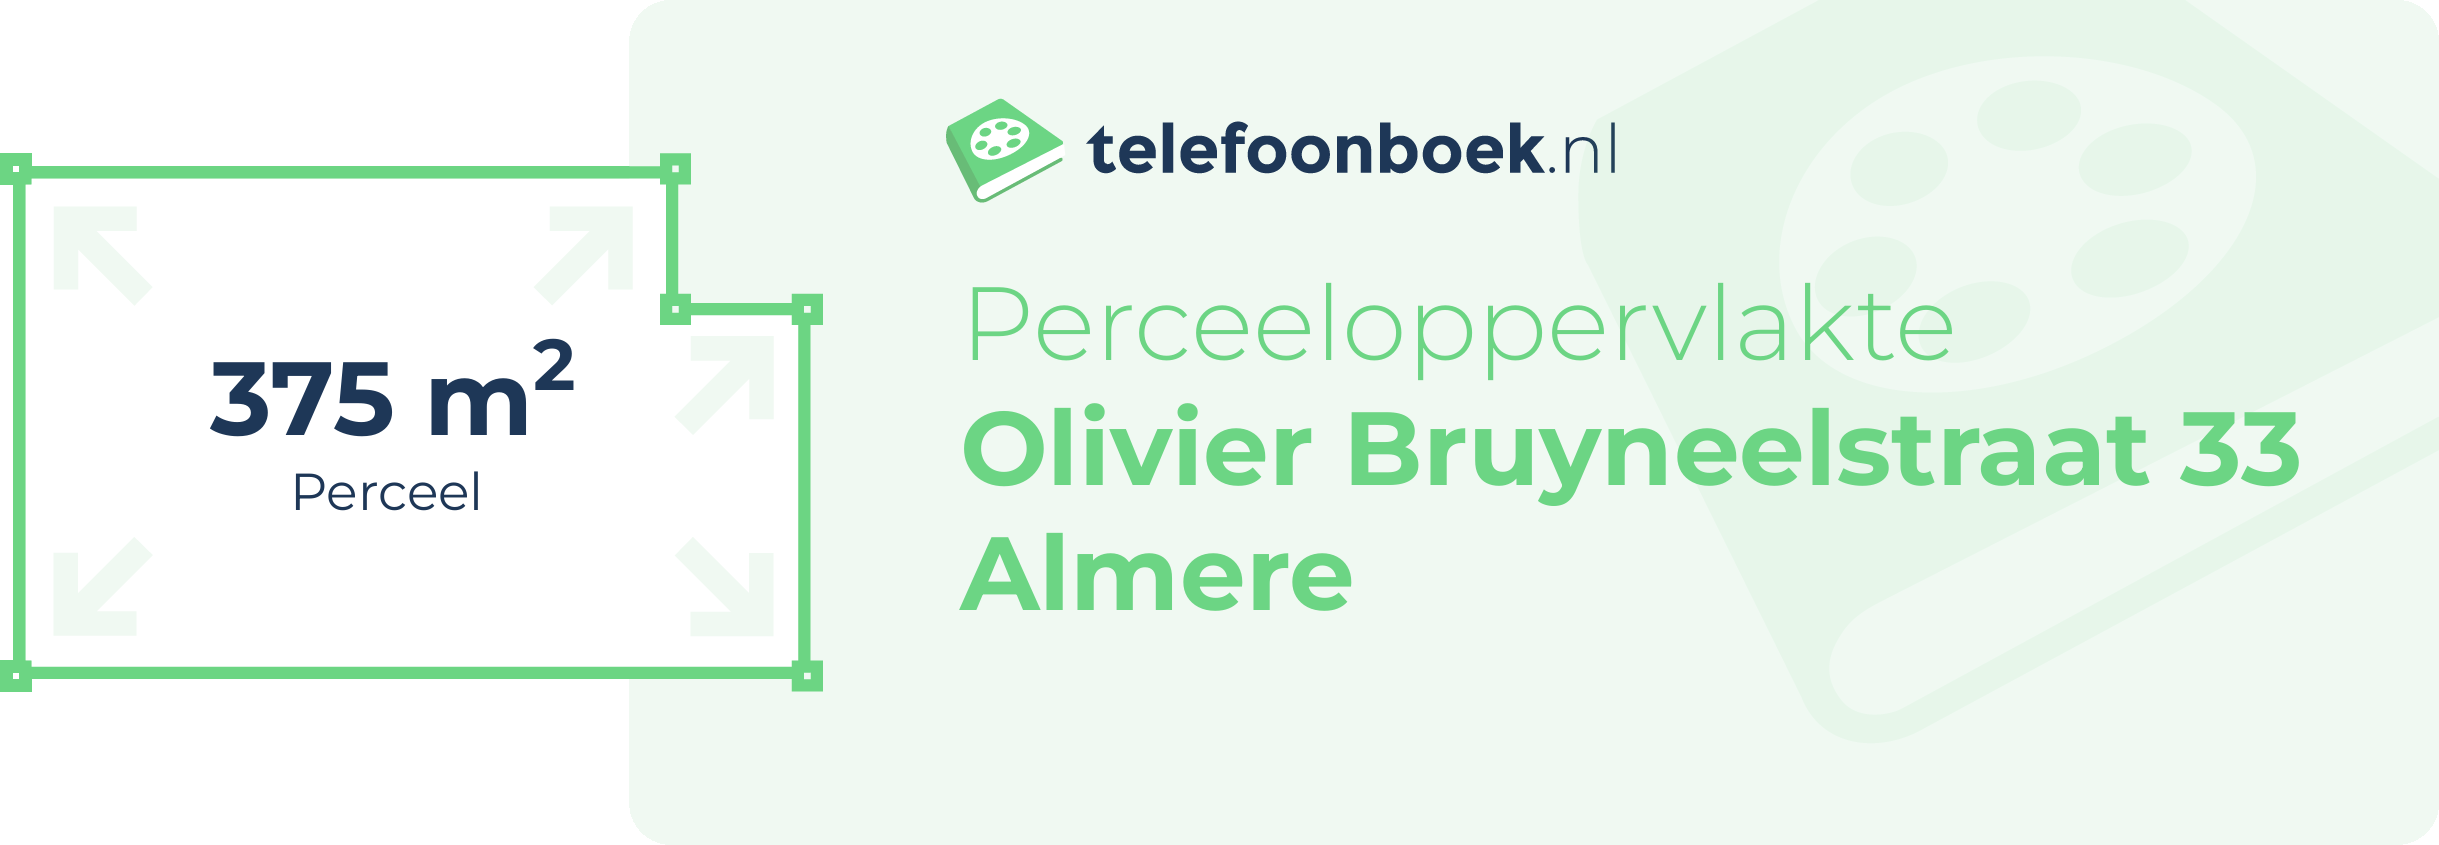 Perceeloppervlakte Olivier Bruyneelstraat 33 Almere